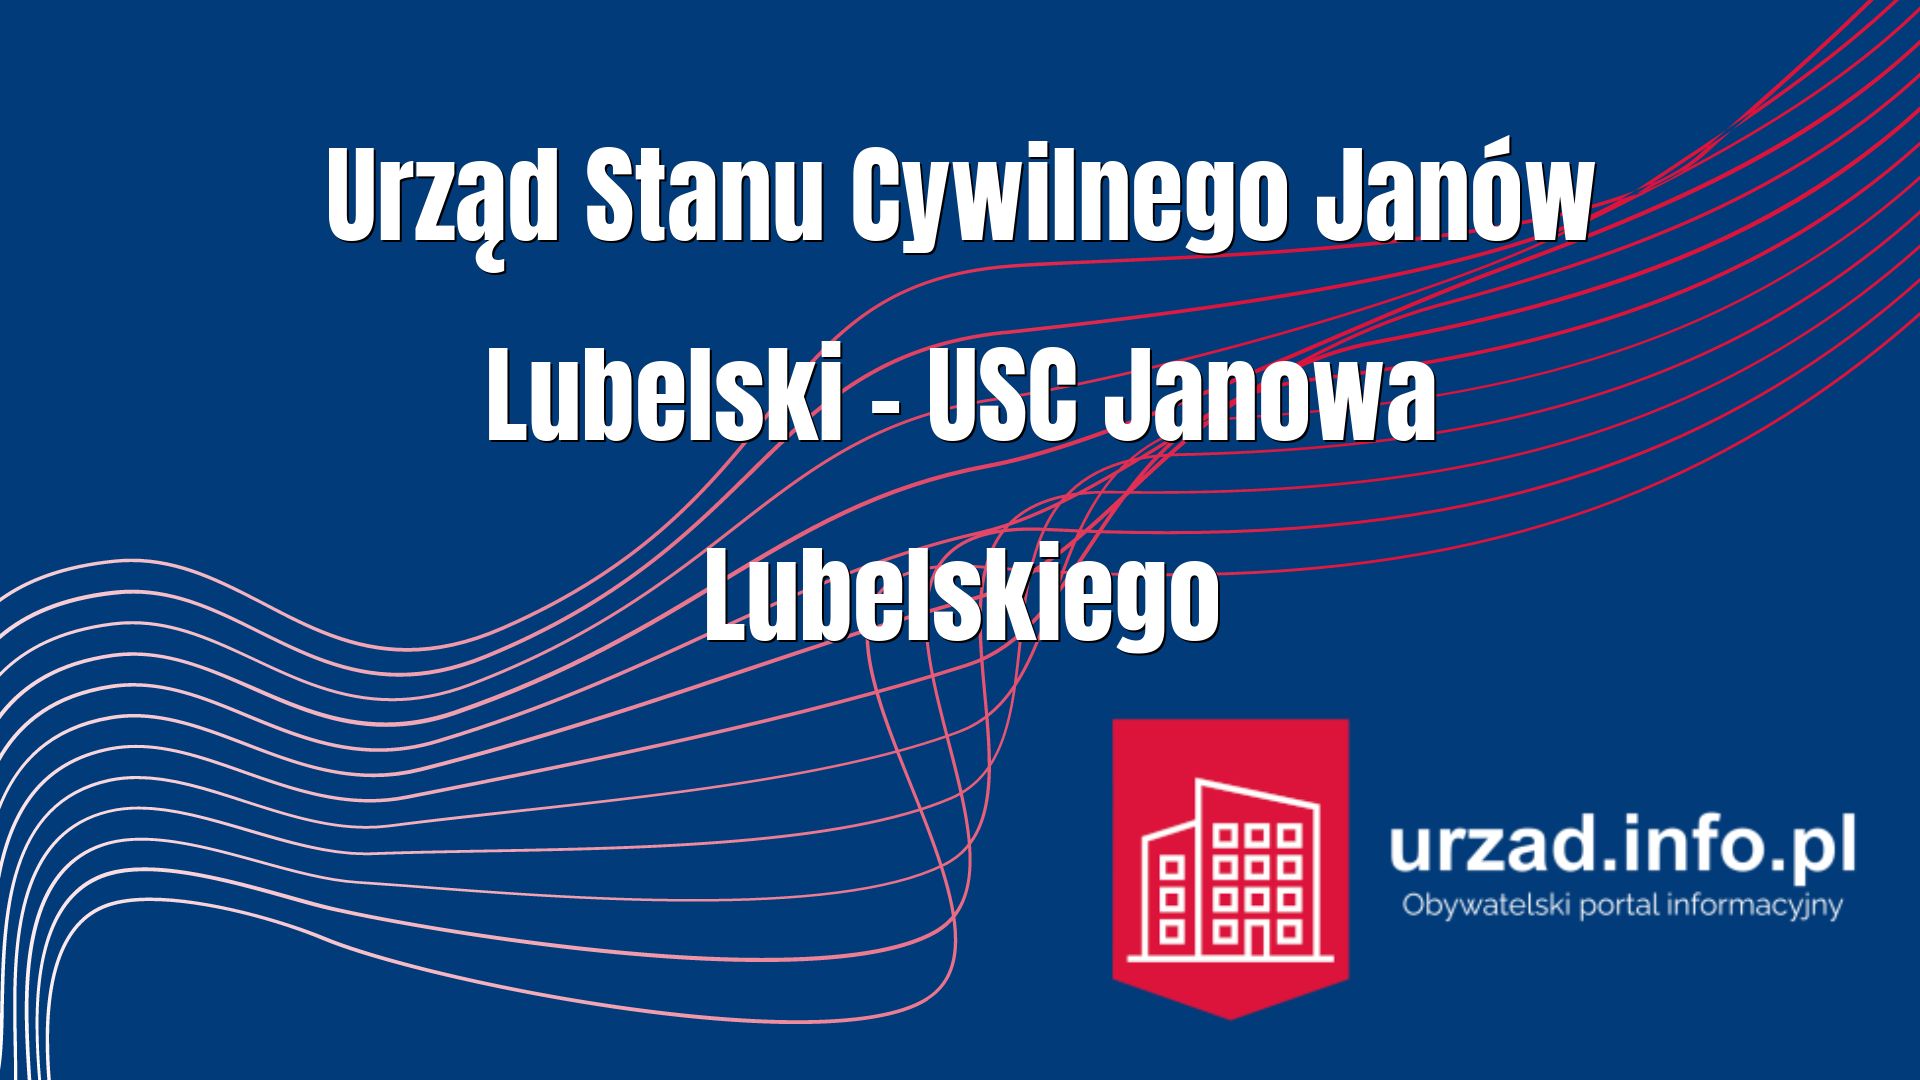 Urząd Stanu Cywilnego Janów Lubelski – USC Janowa Lubelskiego